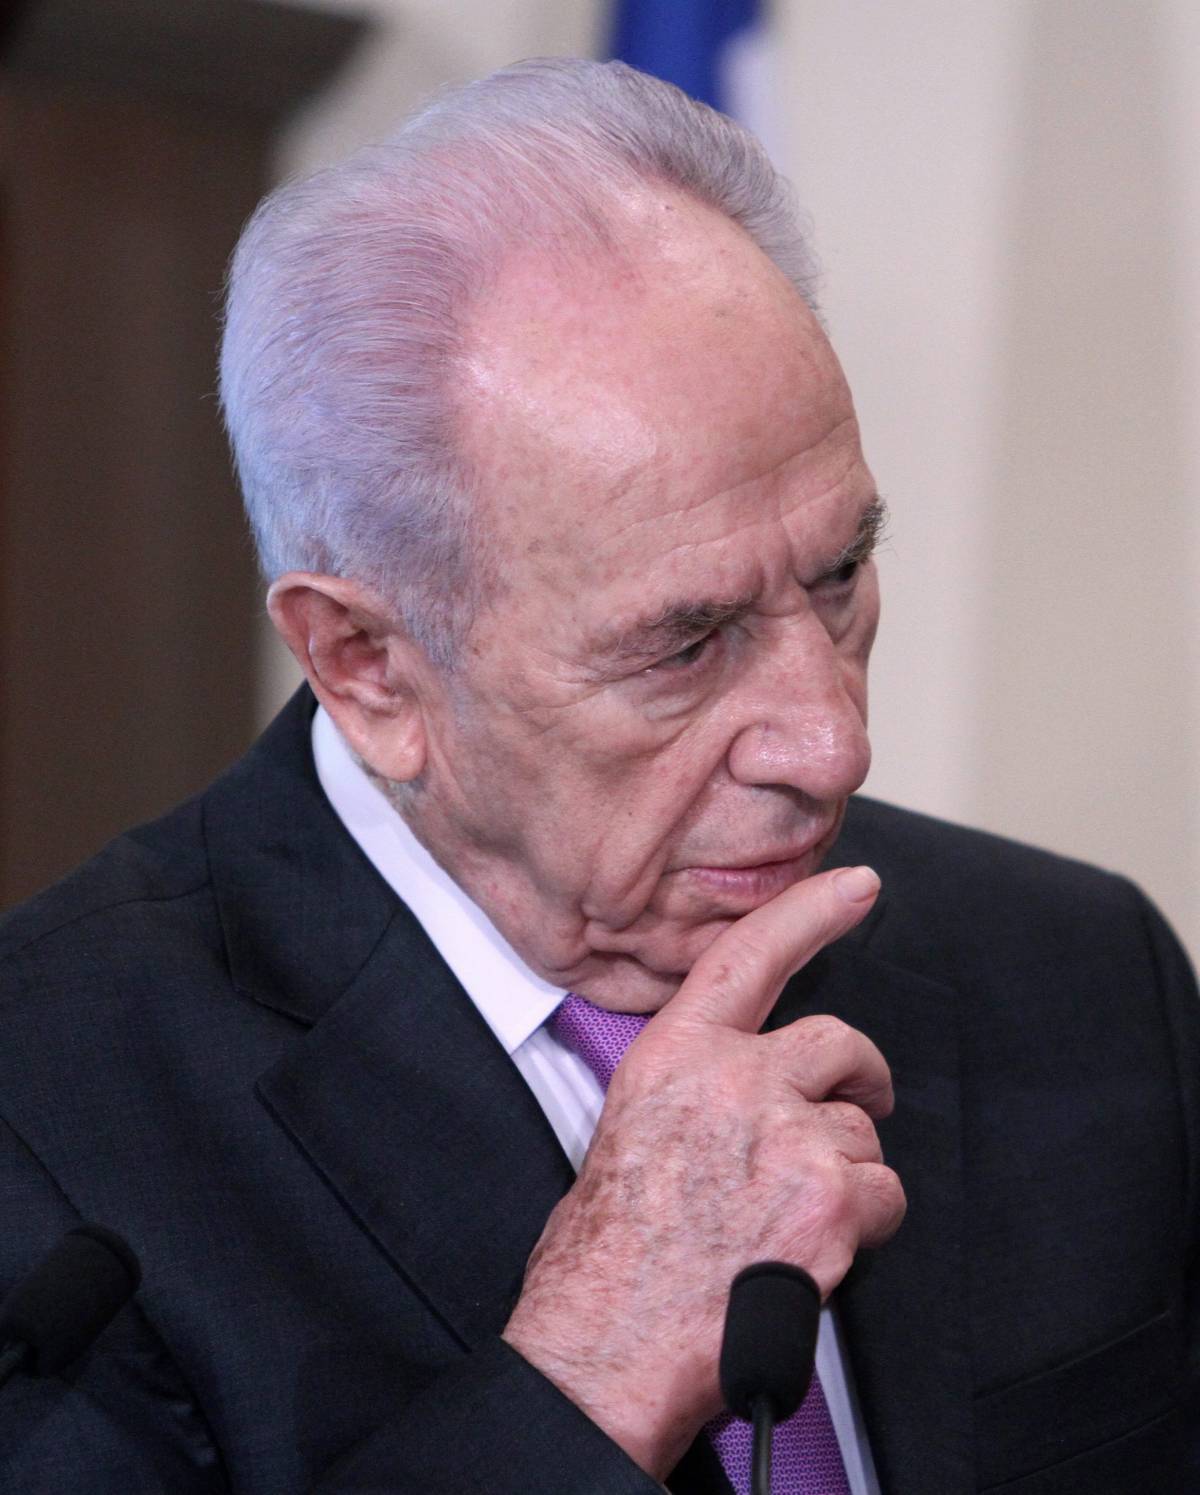 Nucleare, il capo di stato israeliano Peres:  "Vicina l'opzione militare contro l'Iran"